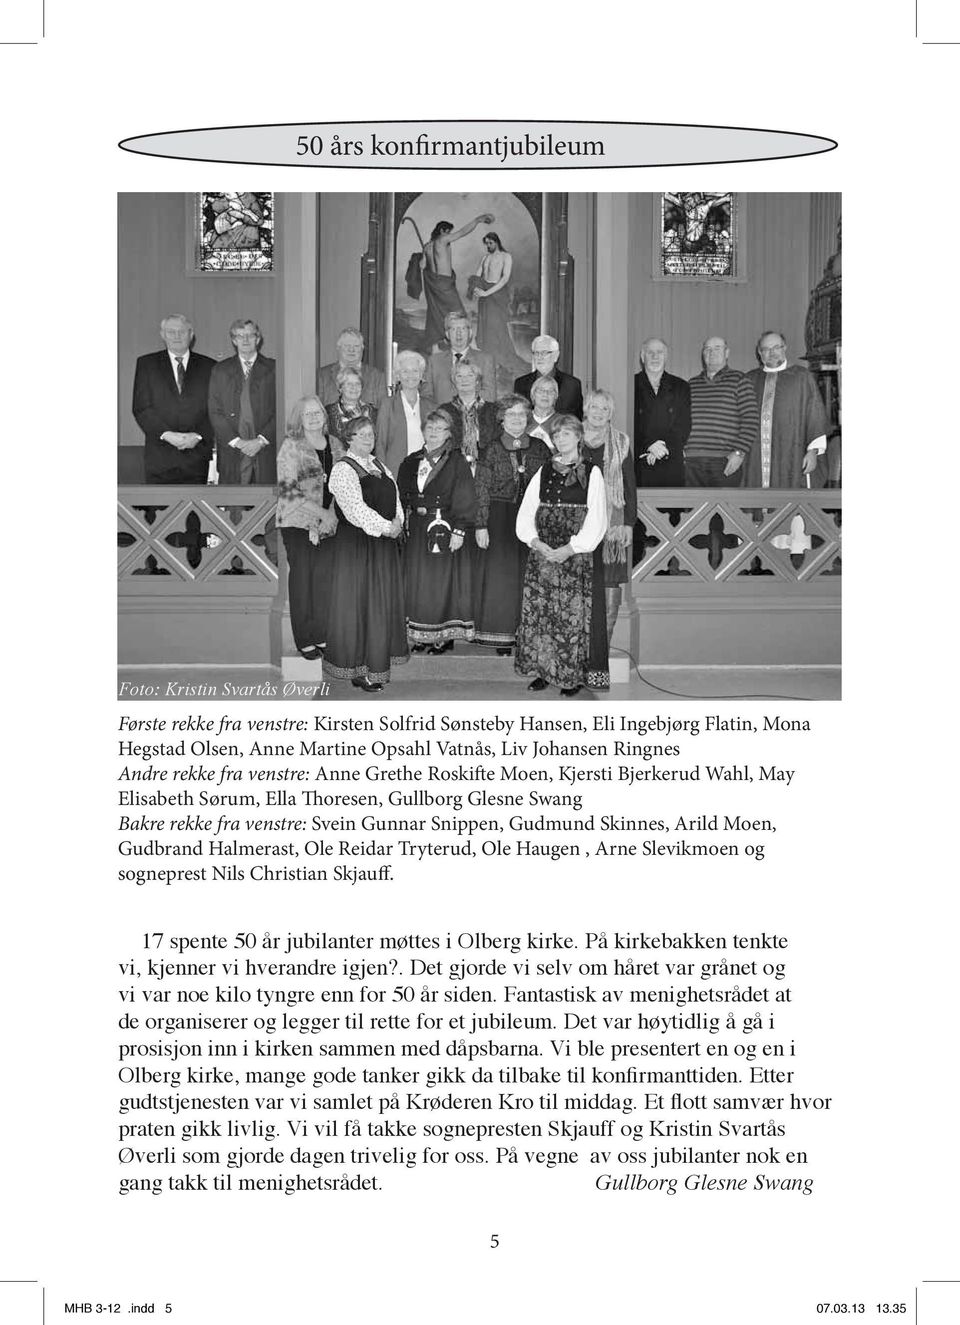 Skinnes, Arild Moen, Gudbrand Halmerast, Ole Reidar Tryterud, Ole Haugen, Arne Slevikmoen og sogneprest Nils Christian Skjauff. 17 spente 50 år jubilanter møttes i Olberg kirke.